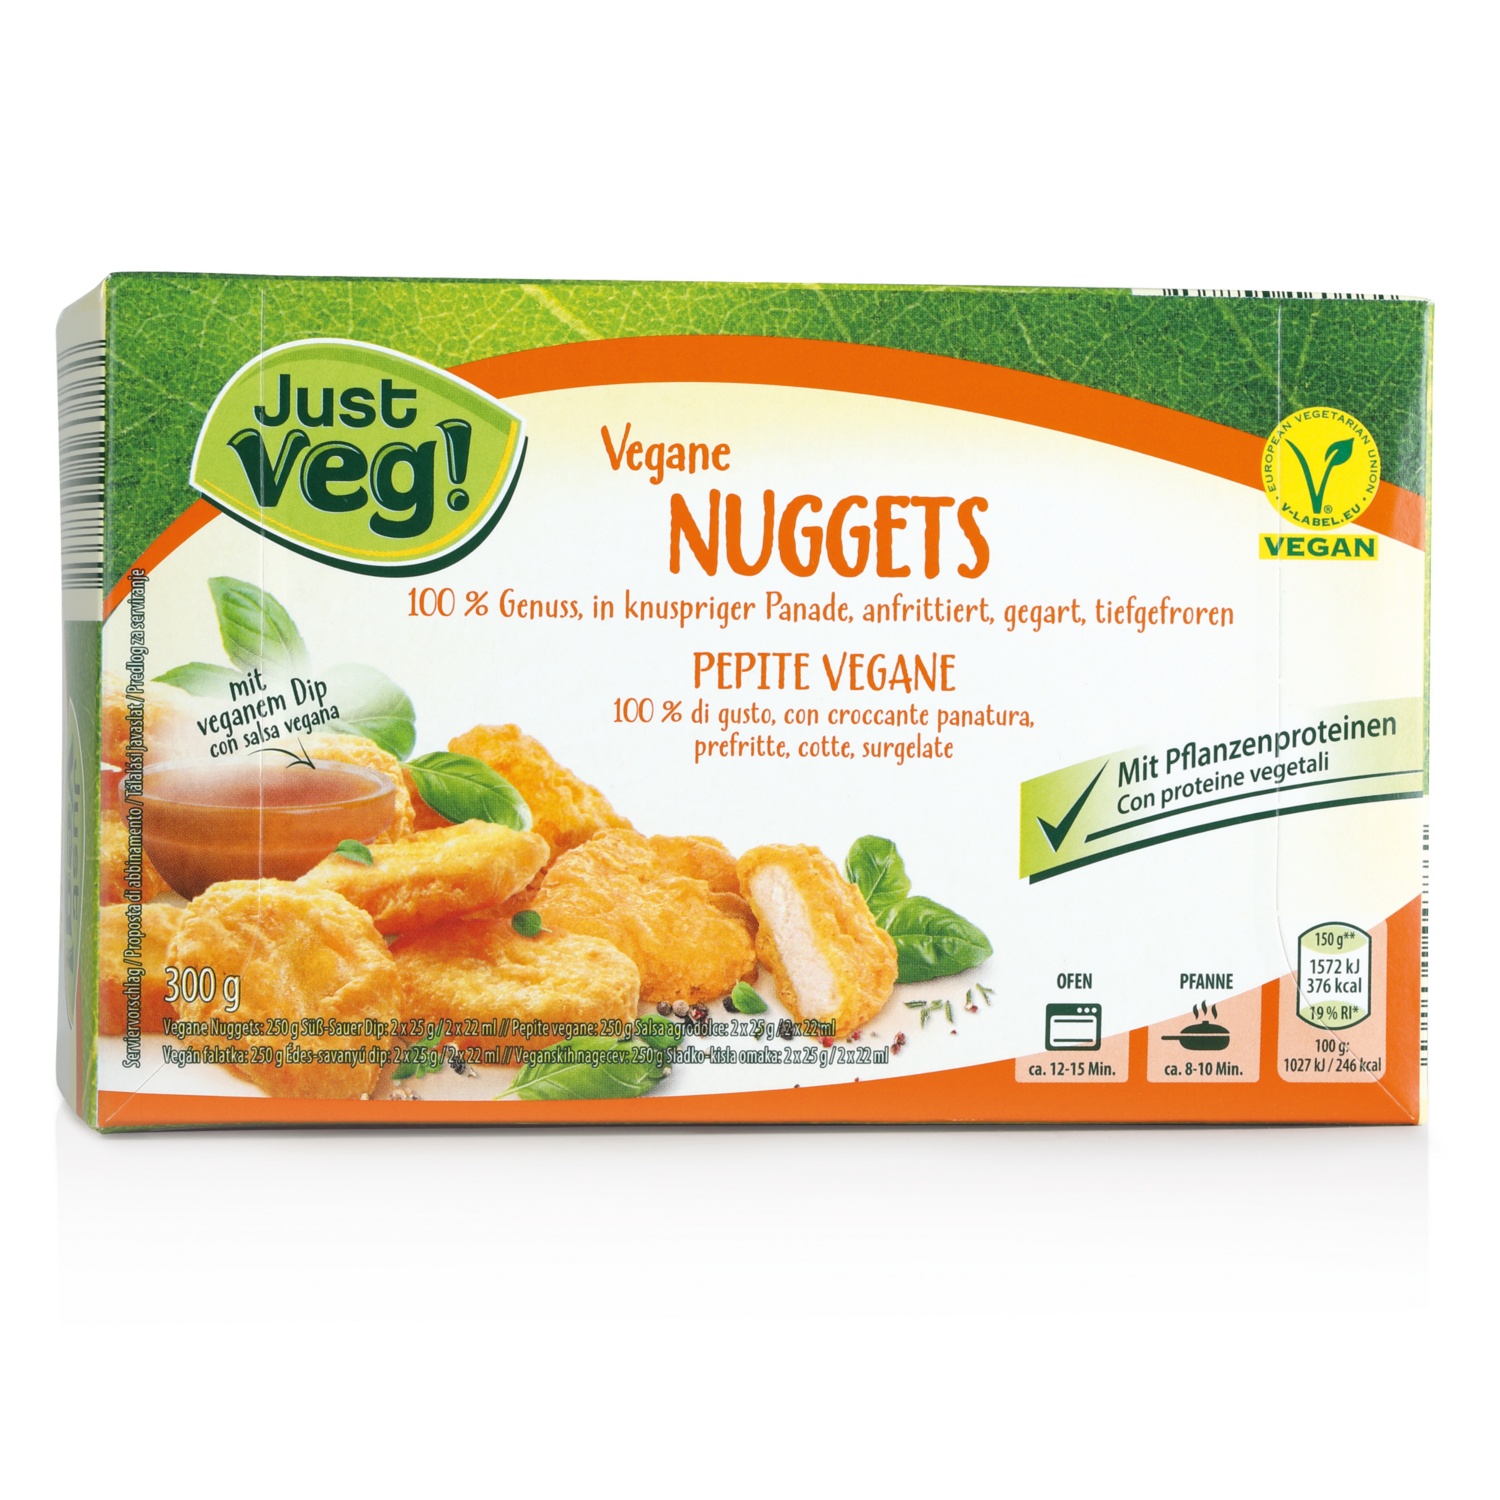 JUST VEG! Veganes Wonder Sortiment, Vegane Nuggets